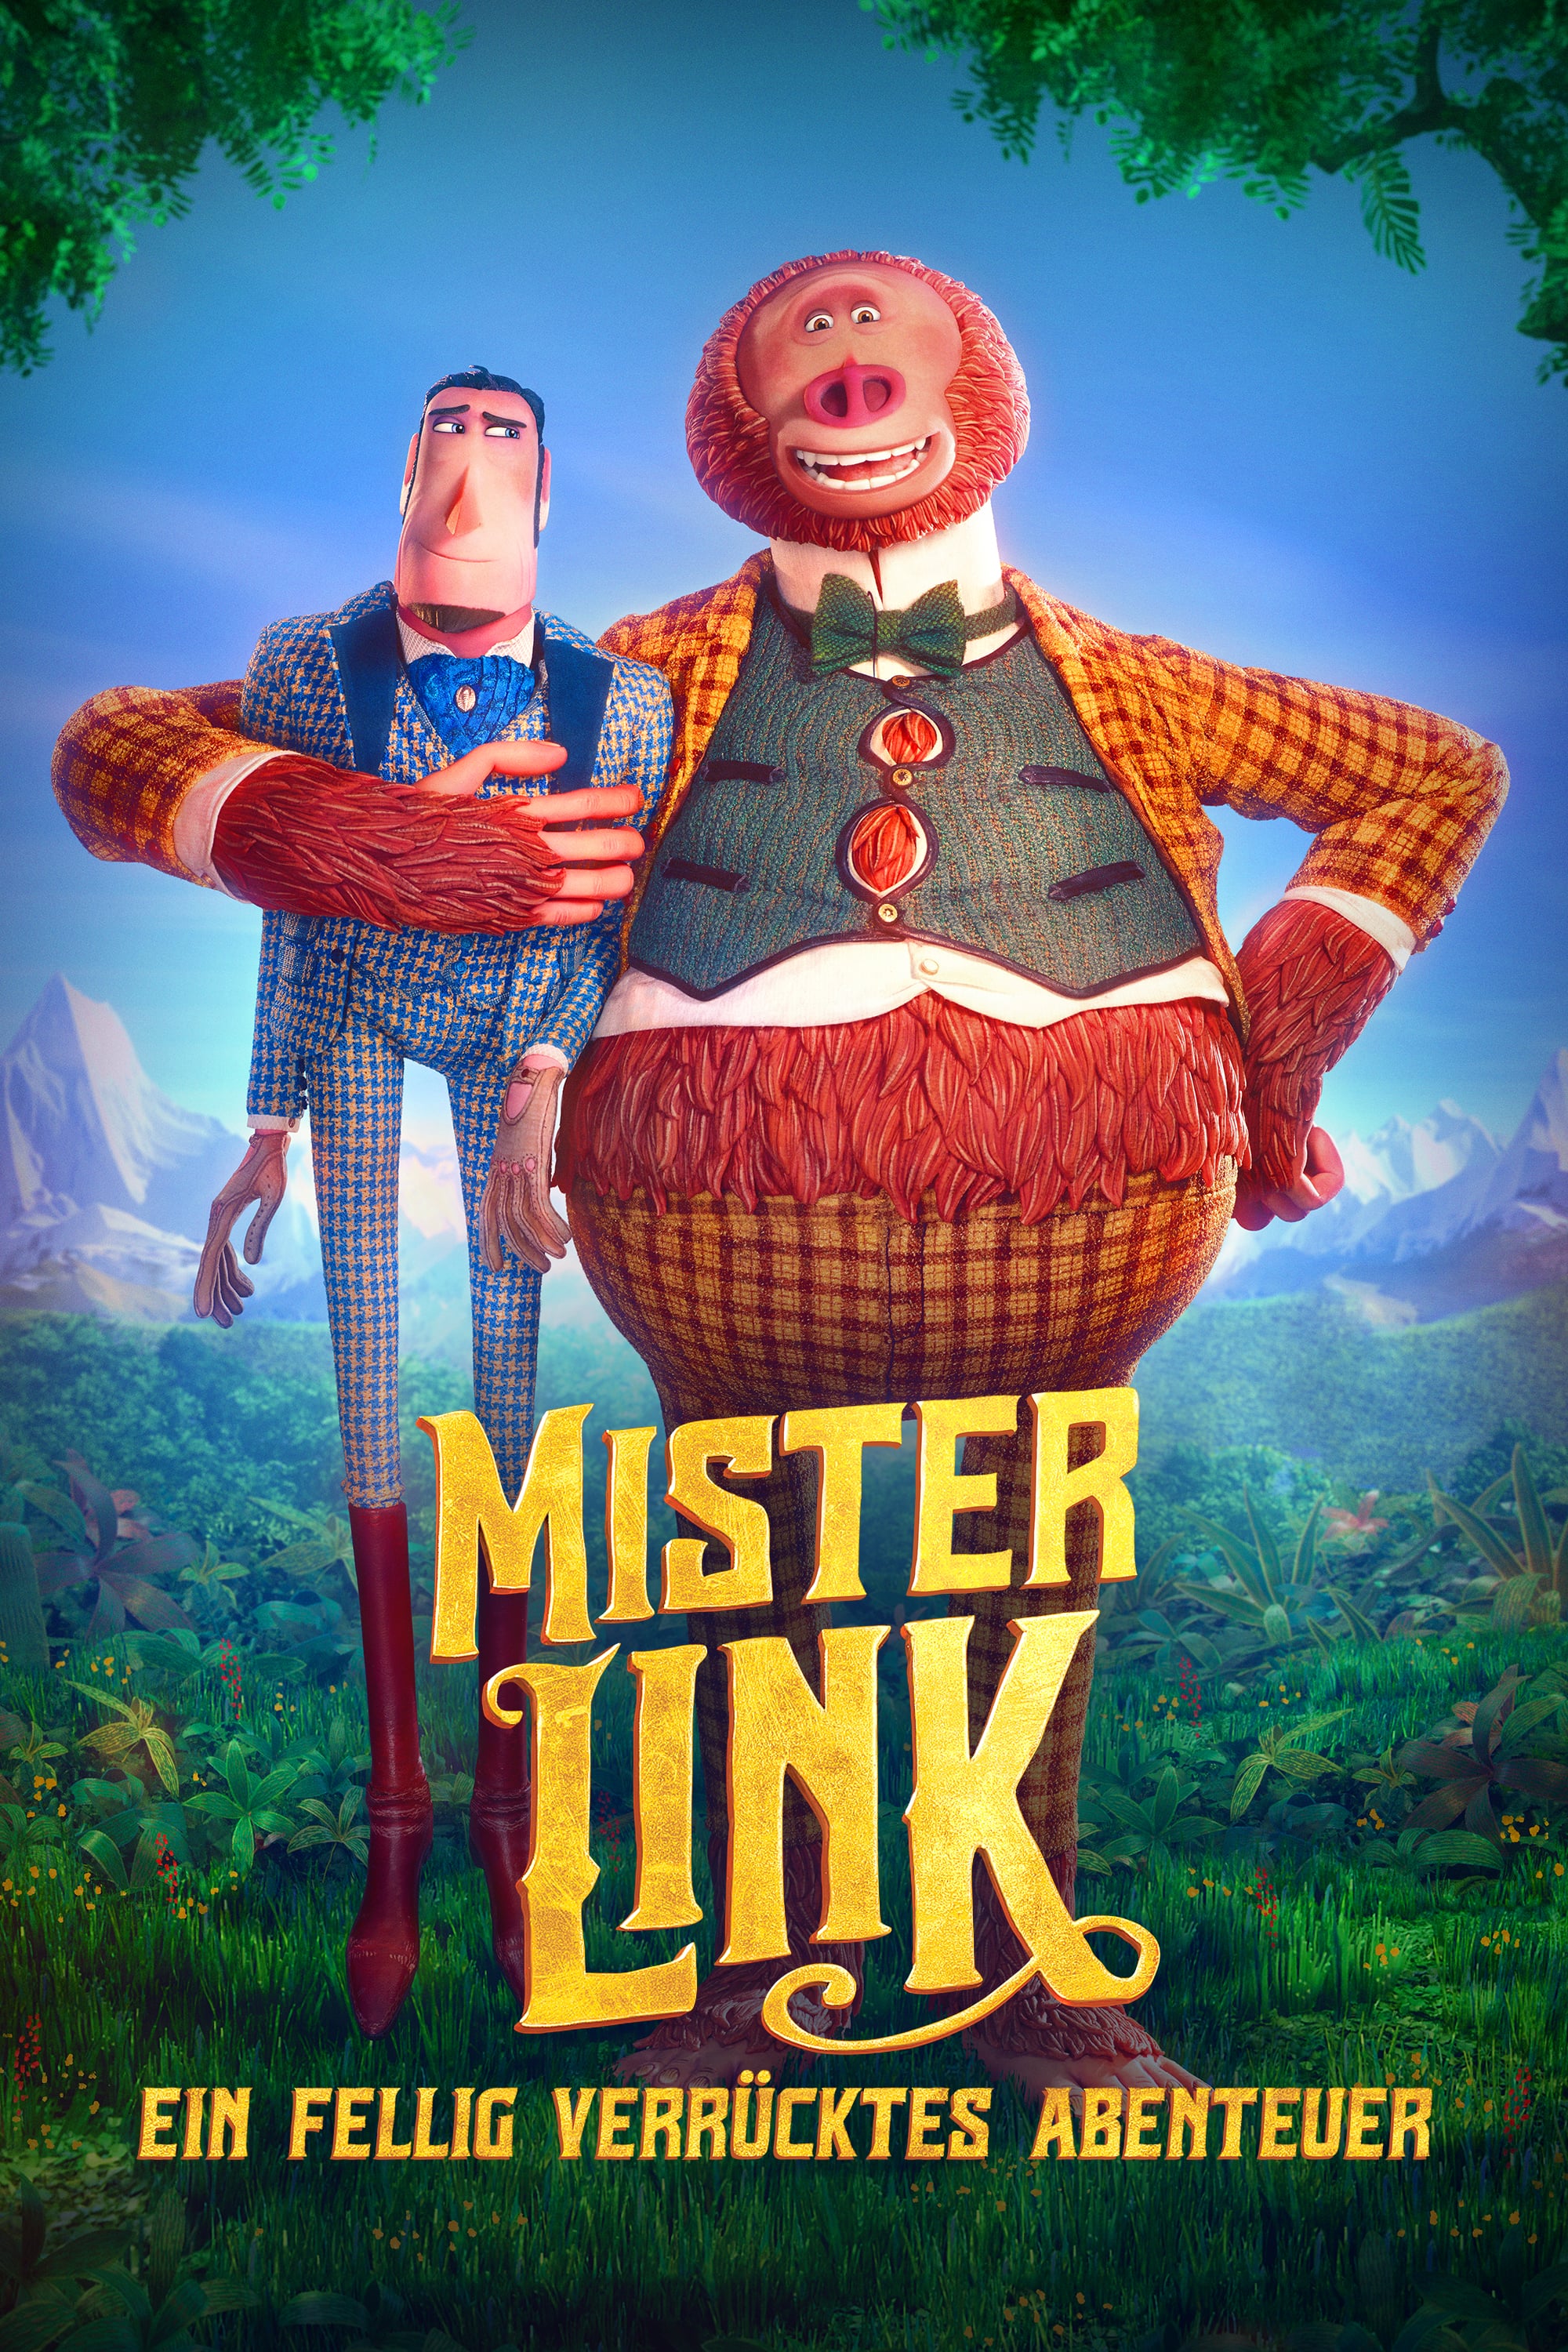 Plakat von "Mister Link - Ein fellig verrücktes Abenteuer"